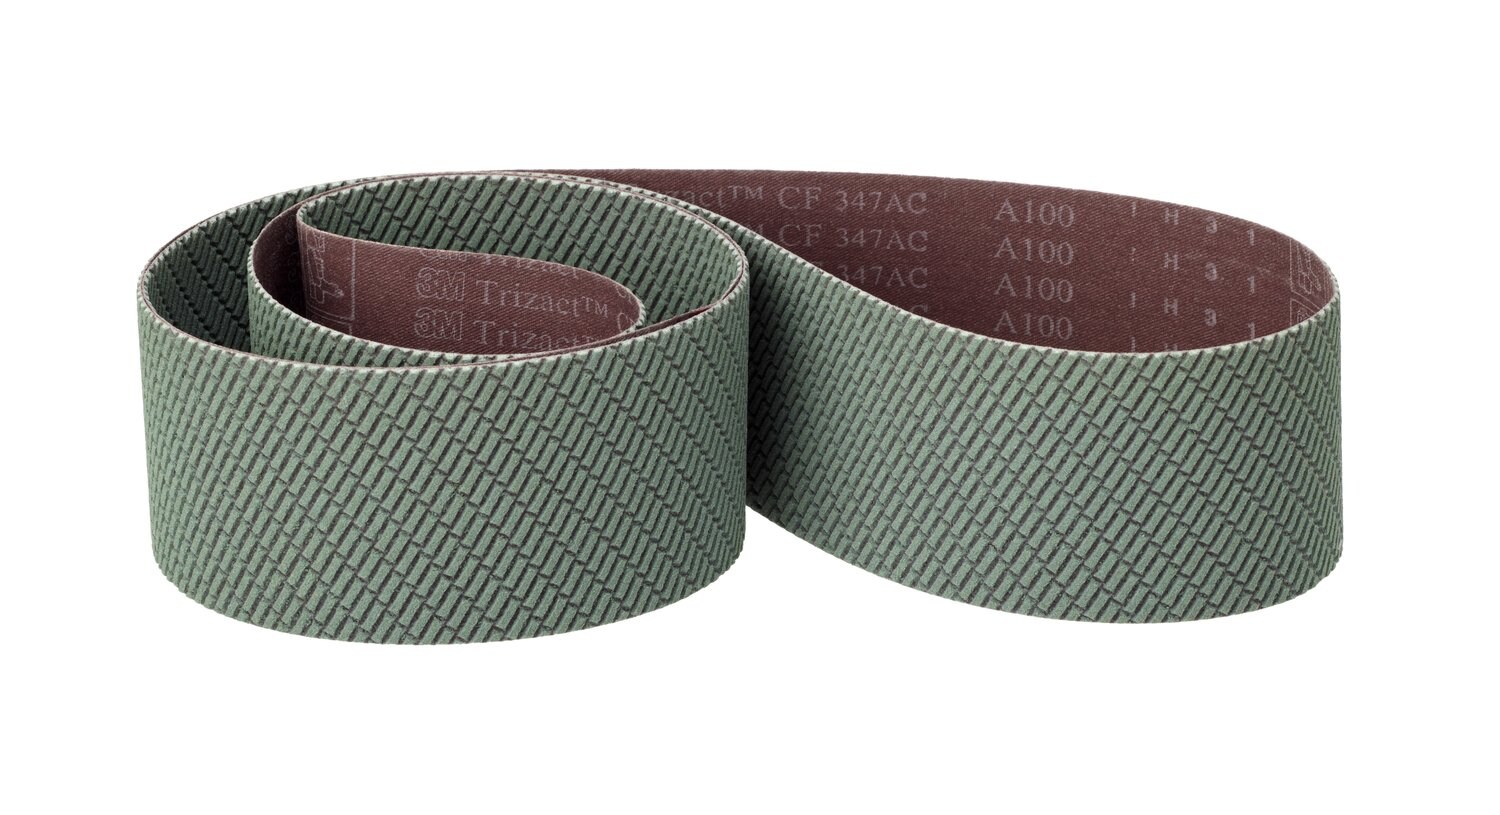 7100219543 - 3M Trizact CF Cloth Belt 347FC, A160 X-weight, 6 in x 148 in, Film- lok, No Flex